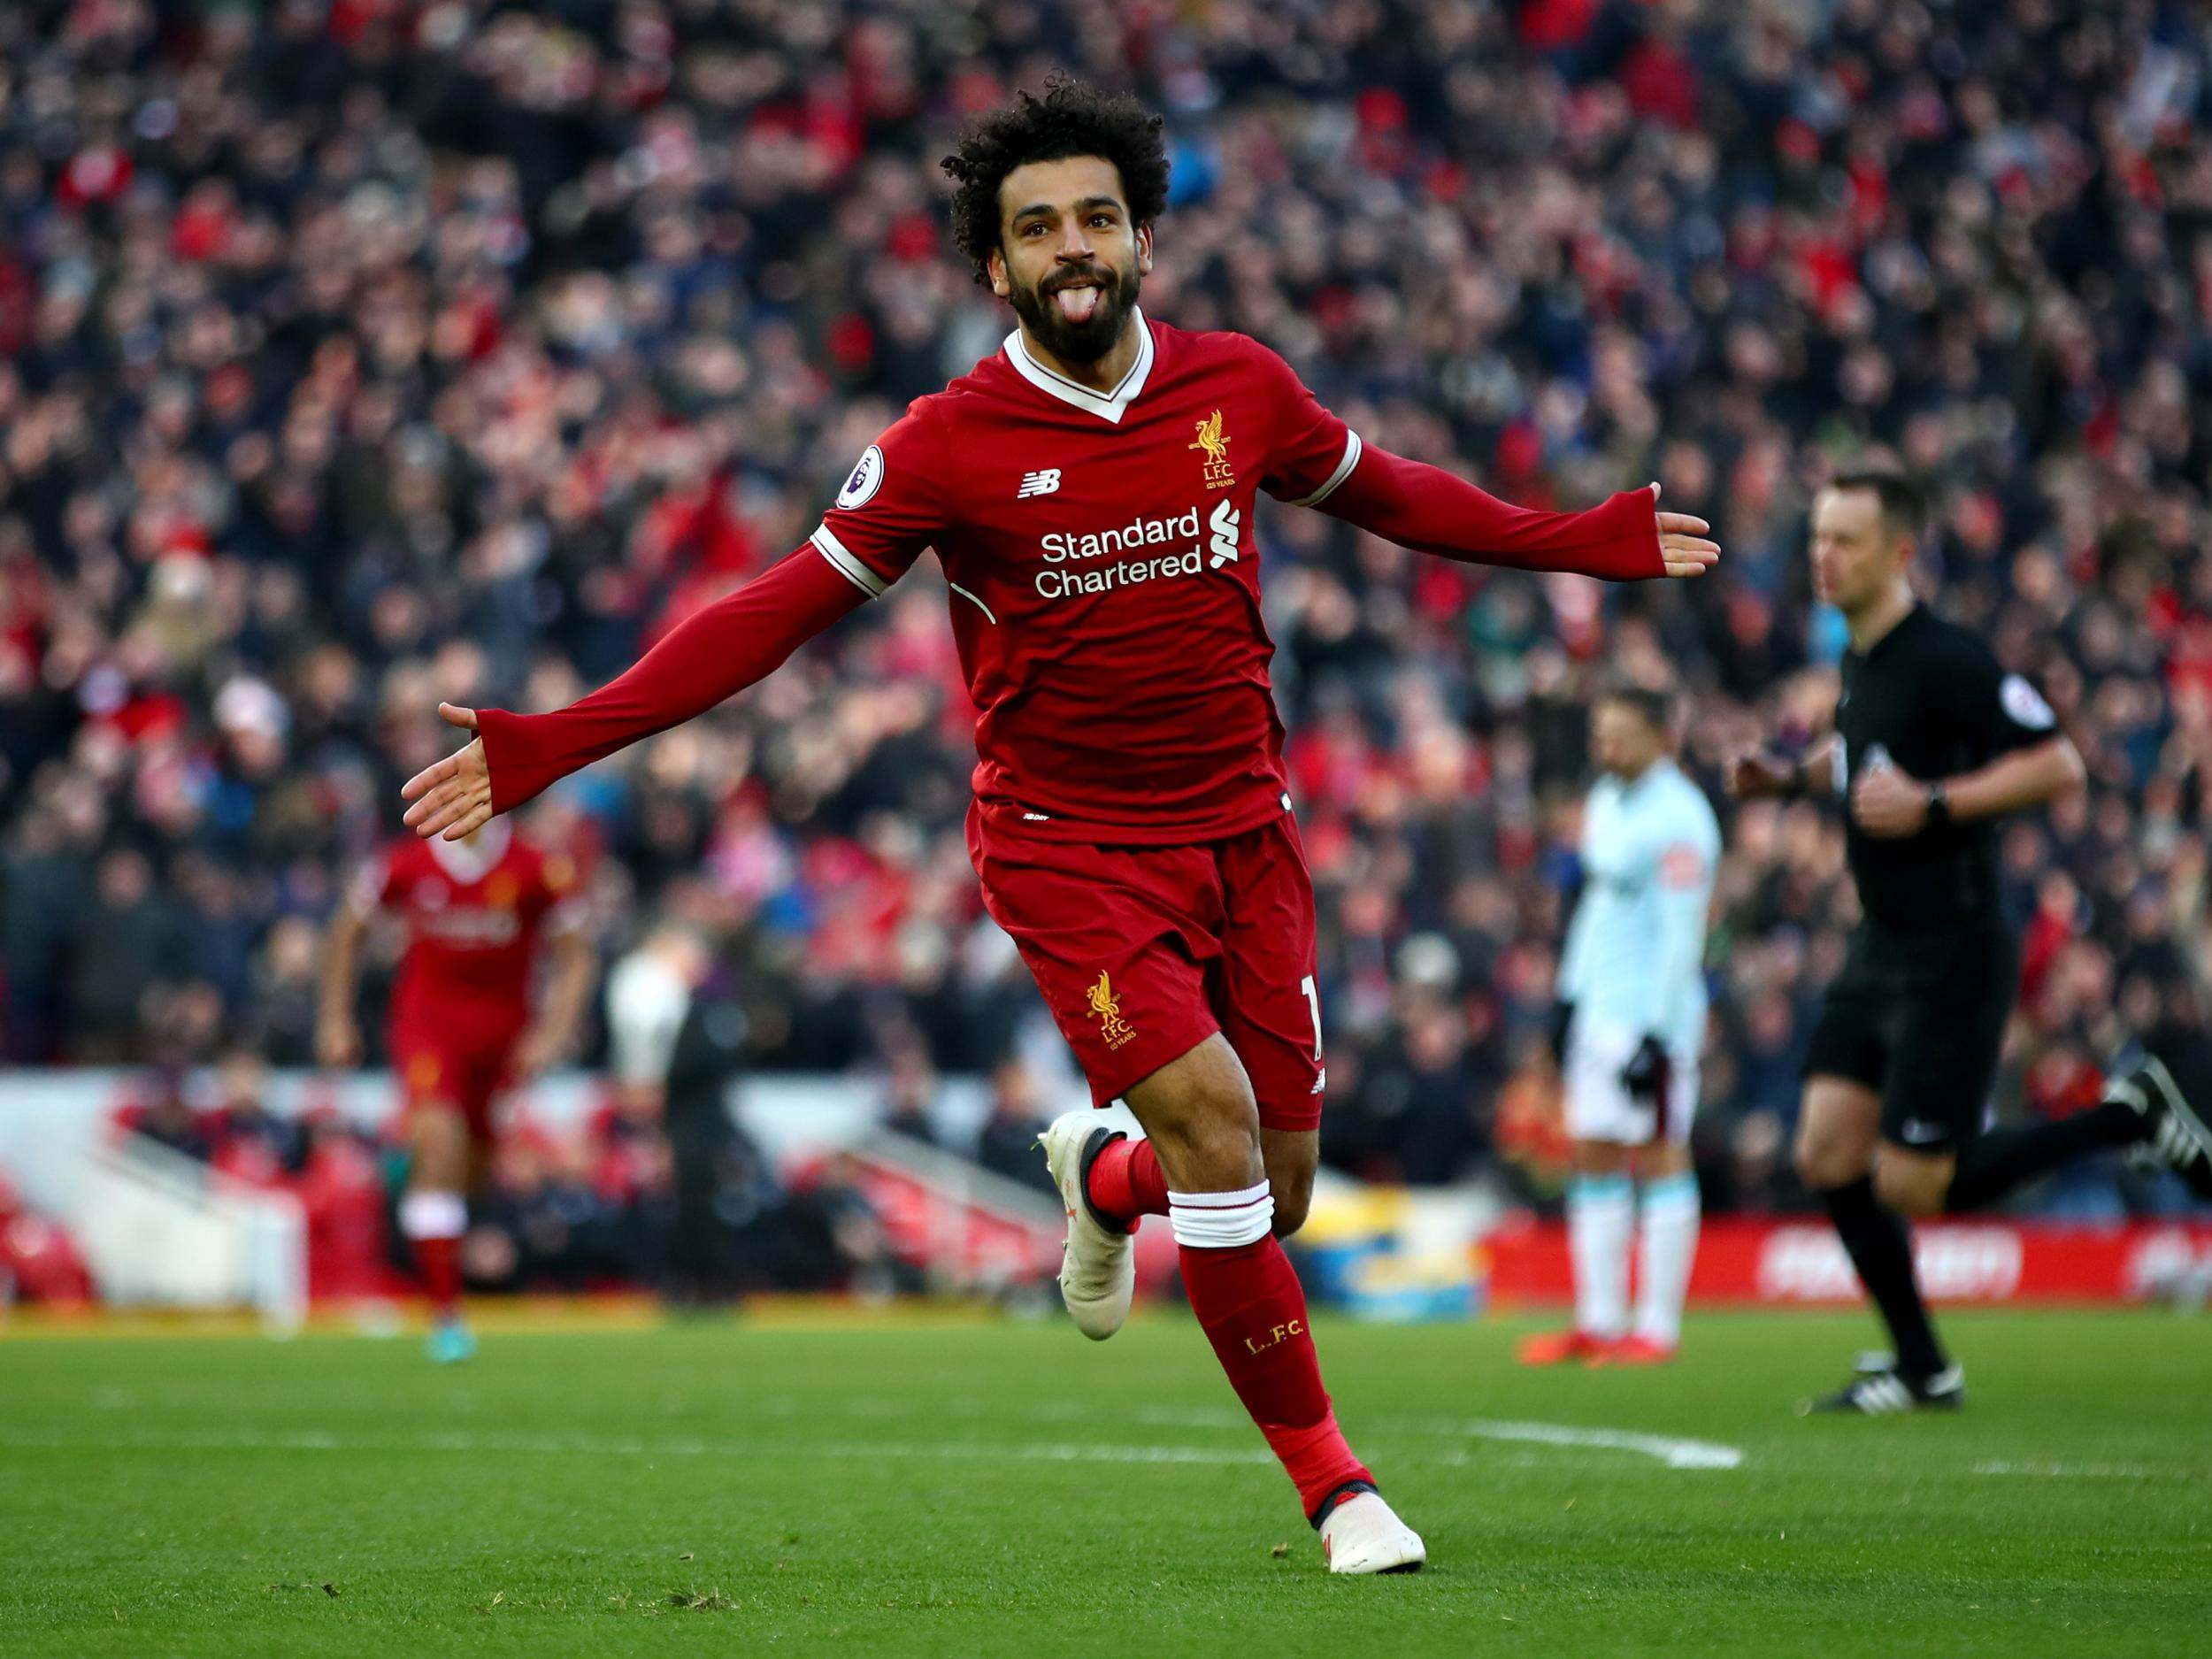 Mo Salah scored yet again as Liverpool ran riot